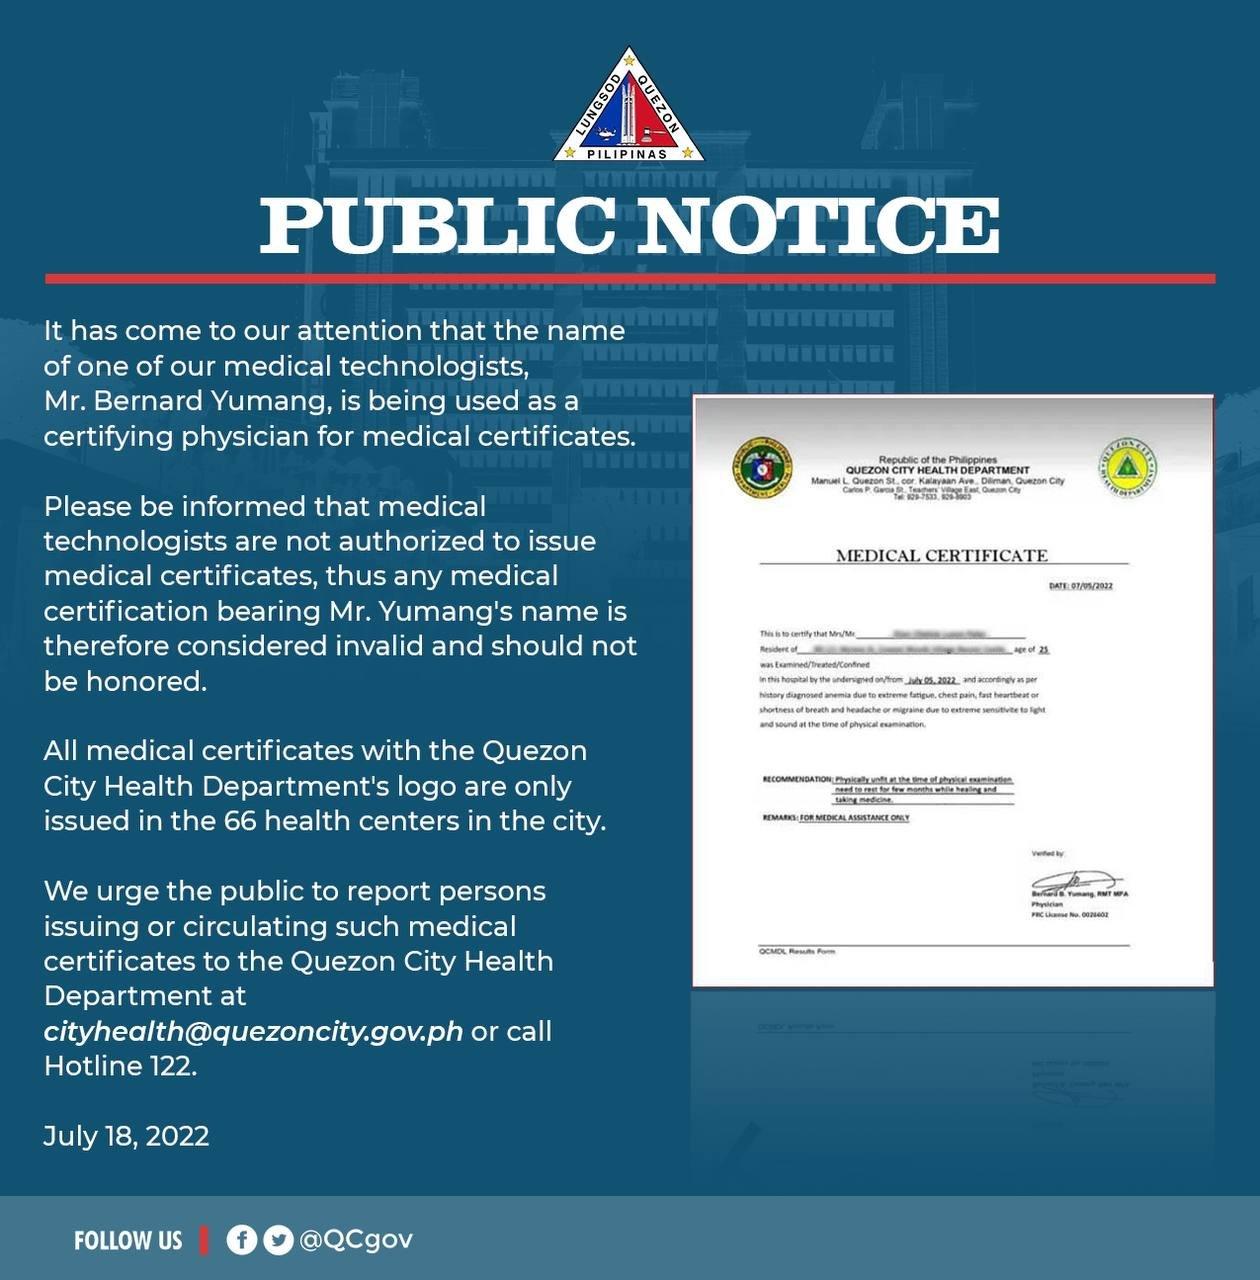 Warga QC memperingatkan tentang sertifikat medis dengan tanda tangan yang tidak valid GMA News Online